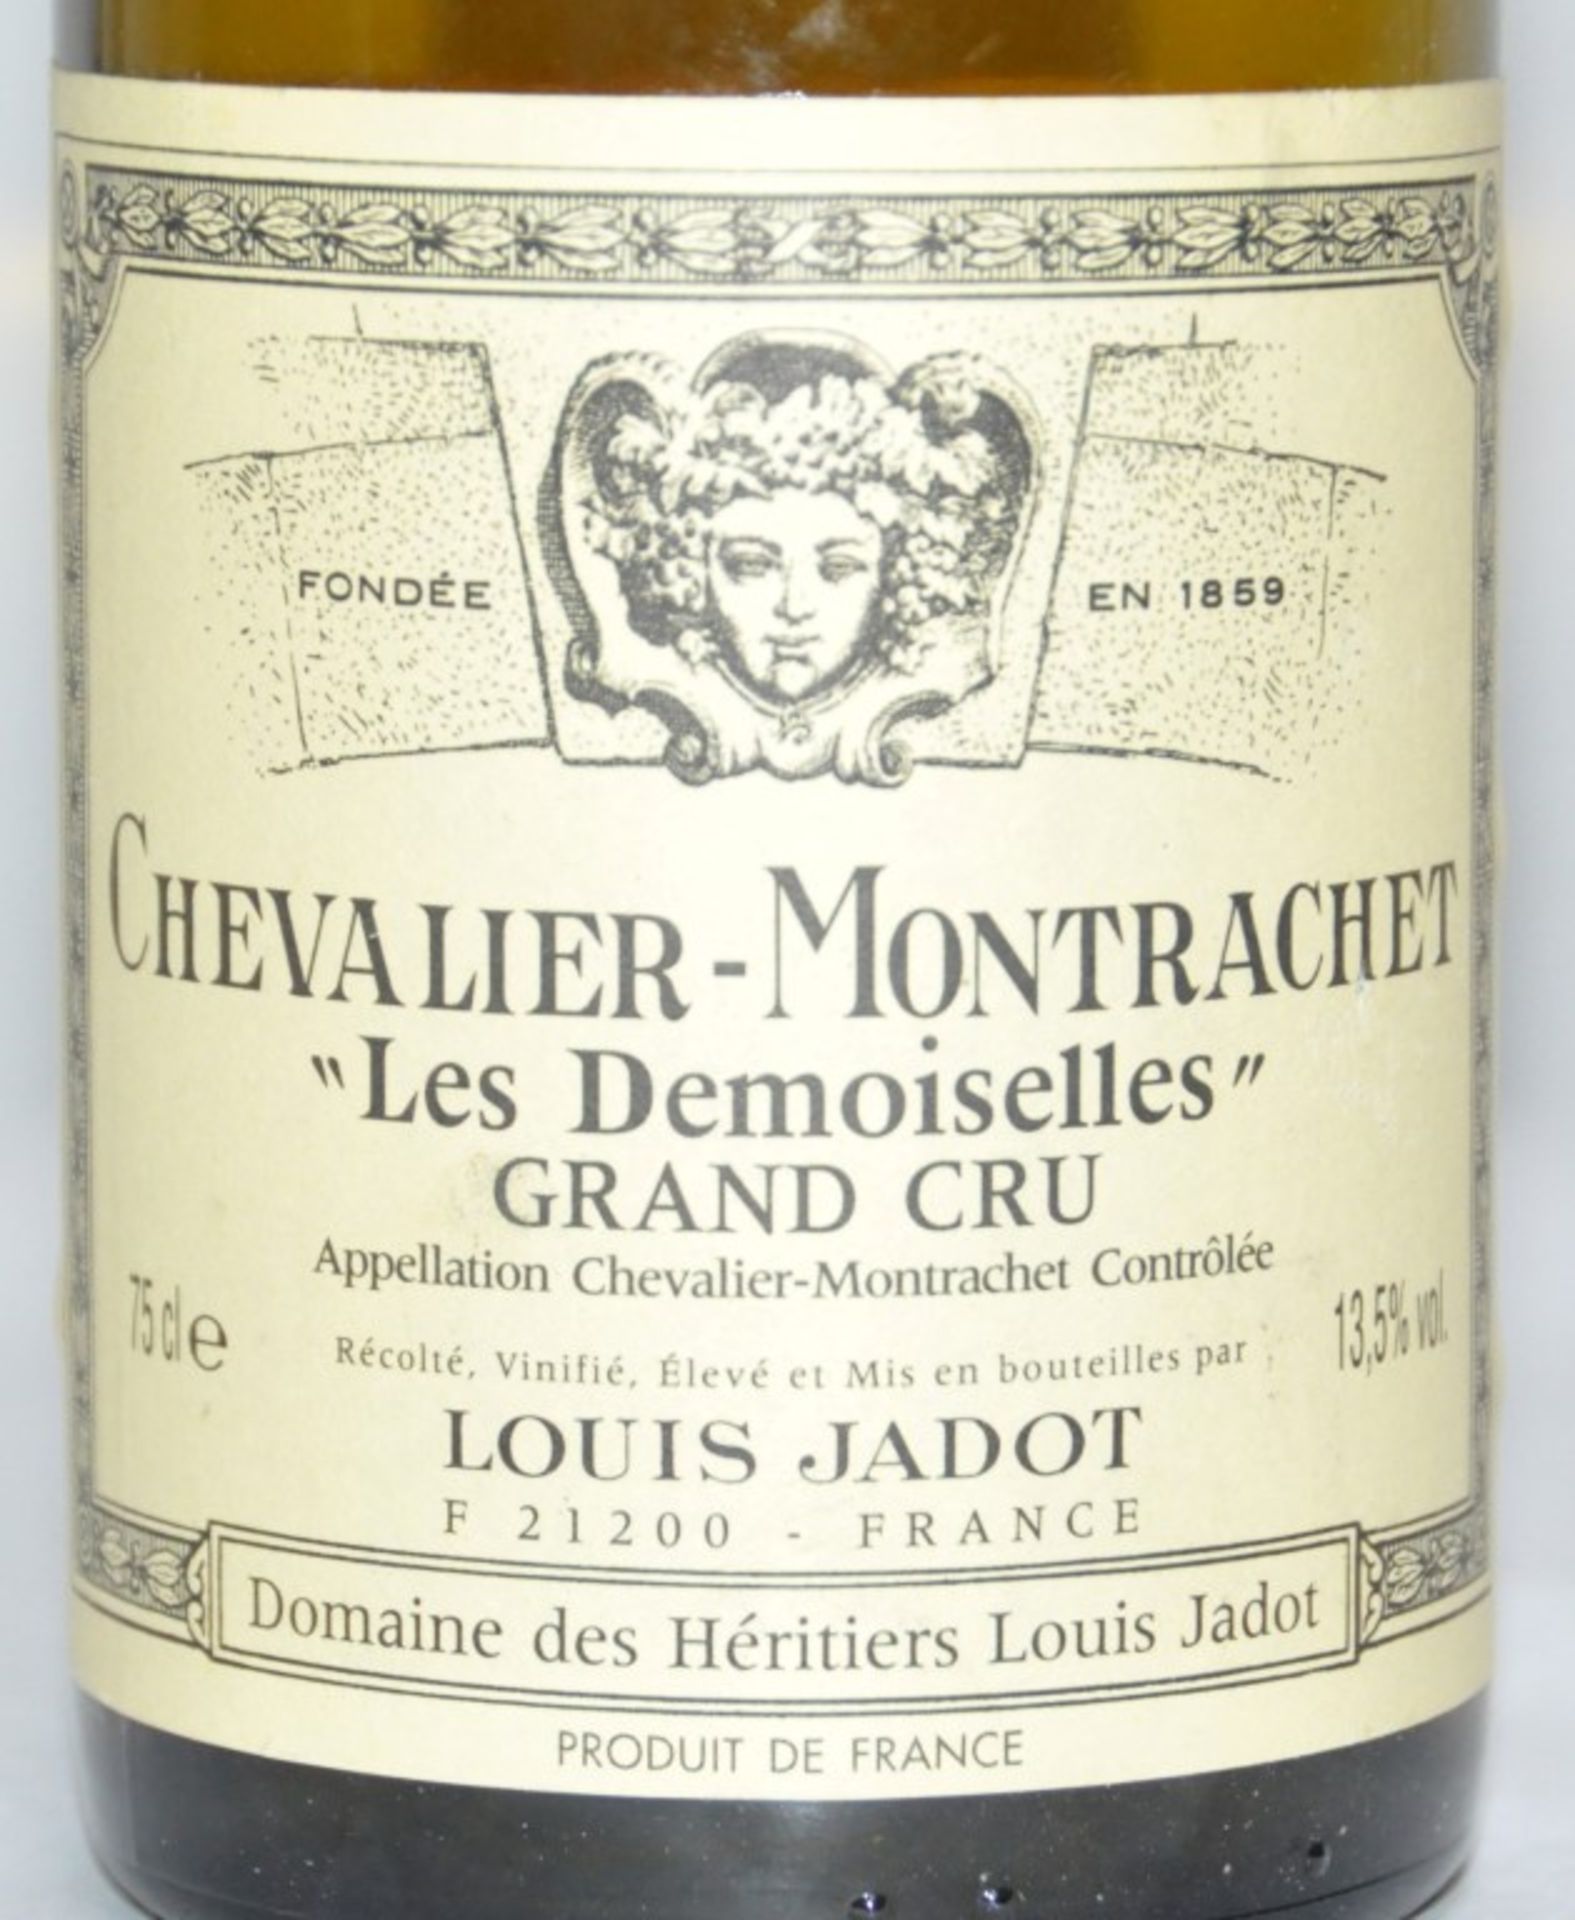 1 x Louis Jadot Domaine des Heritiers Les Demoiselles Chevalier-Montrachet Grand Cru, Cote de - Image 2 of 3